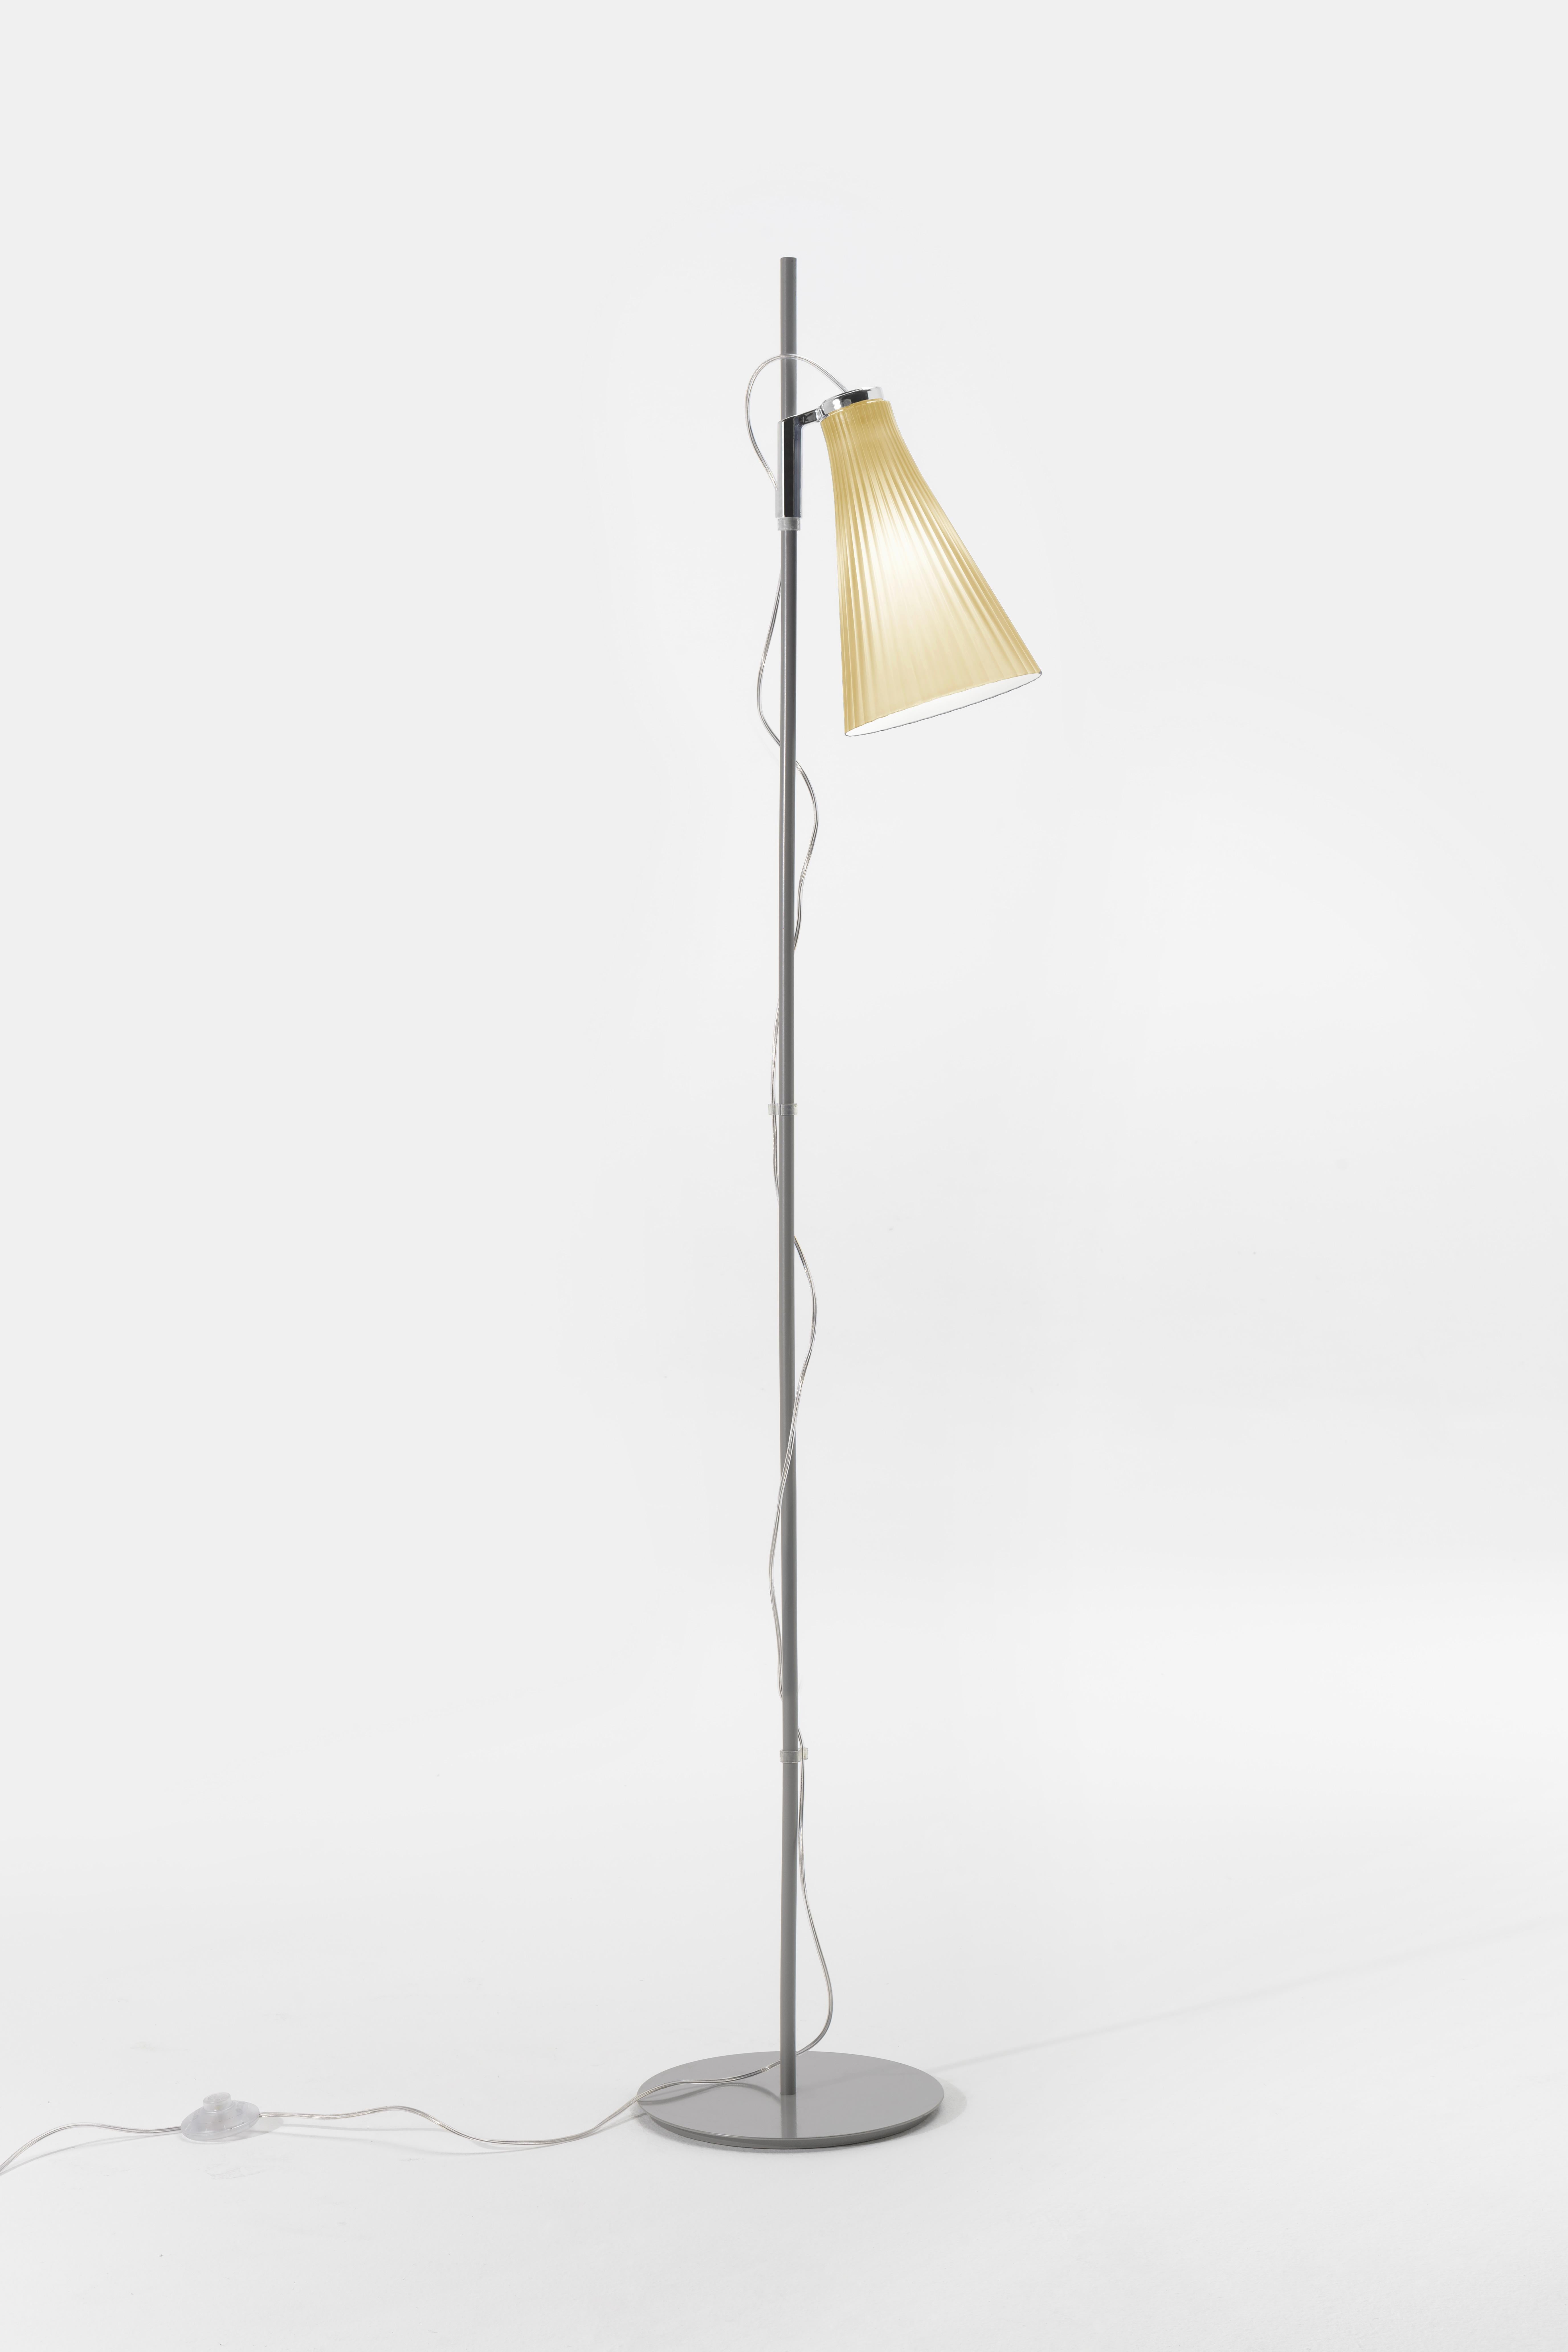 Le lampadaire K-LUX se distingue par la manière fascinante dont il réfracte la lumière grâce à un plastique bi-injecté spécialement formé et par son abat-jour bicolore, blanc à l'intérieur et coloré à l'extérieur. La lampe se décline en six